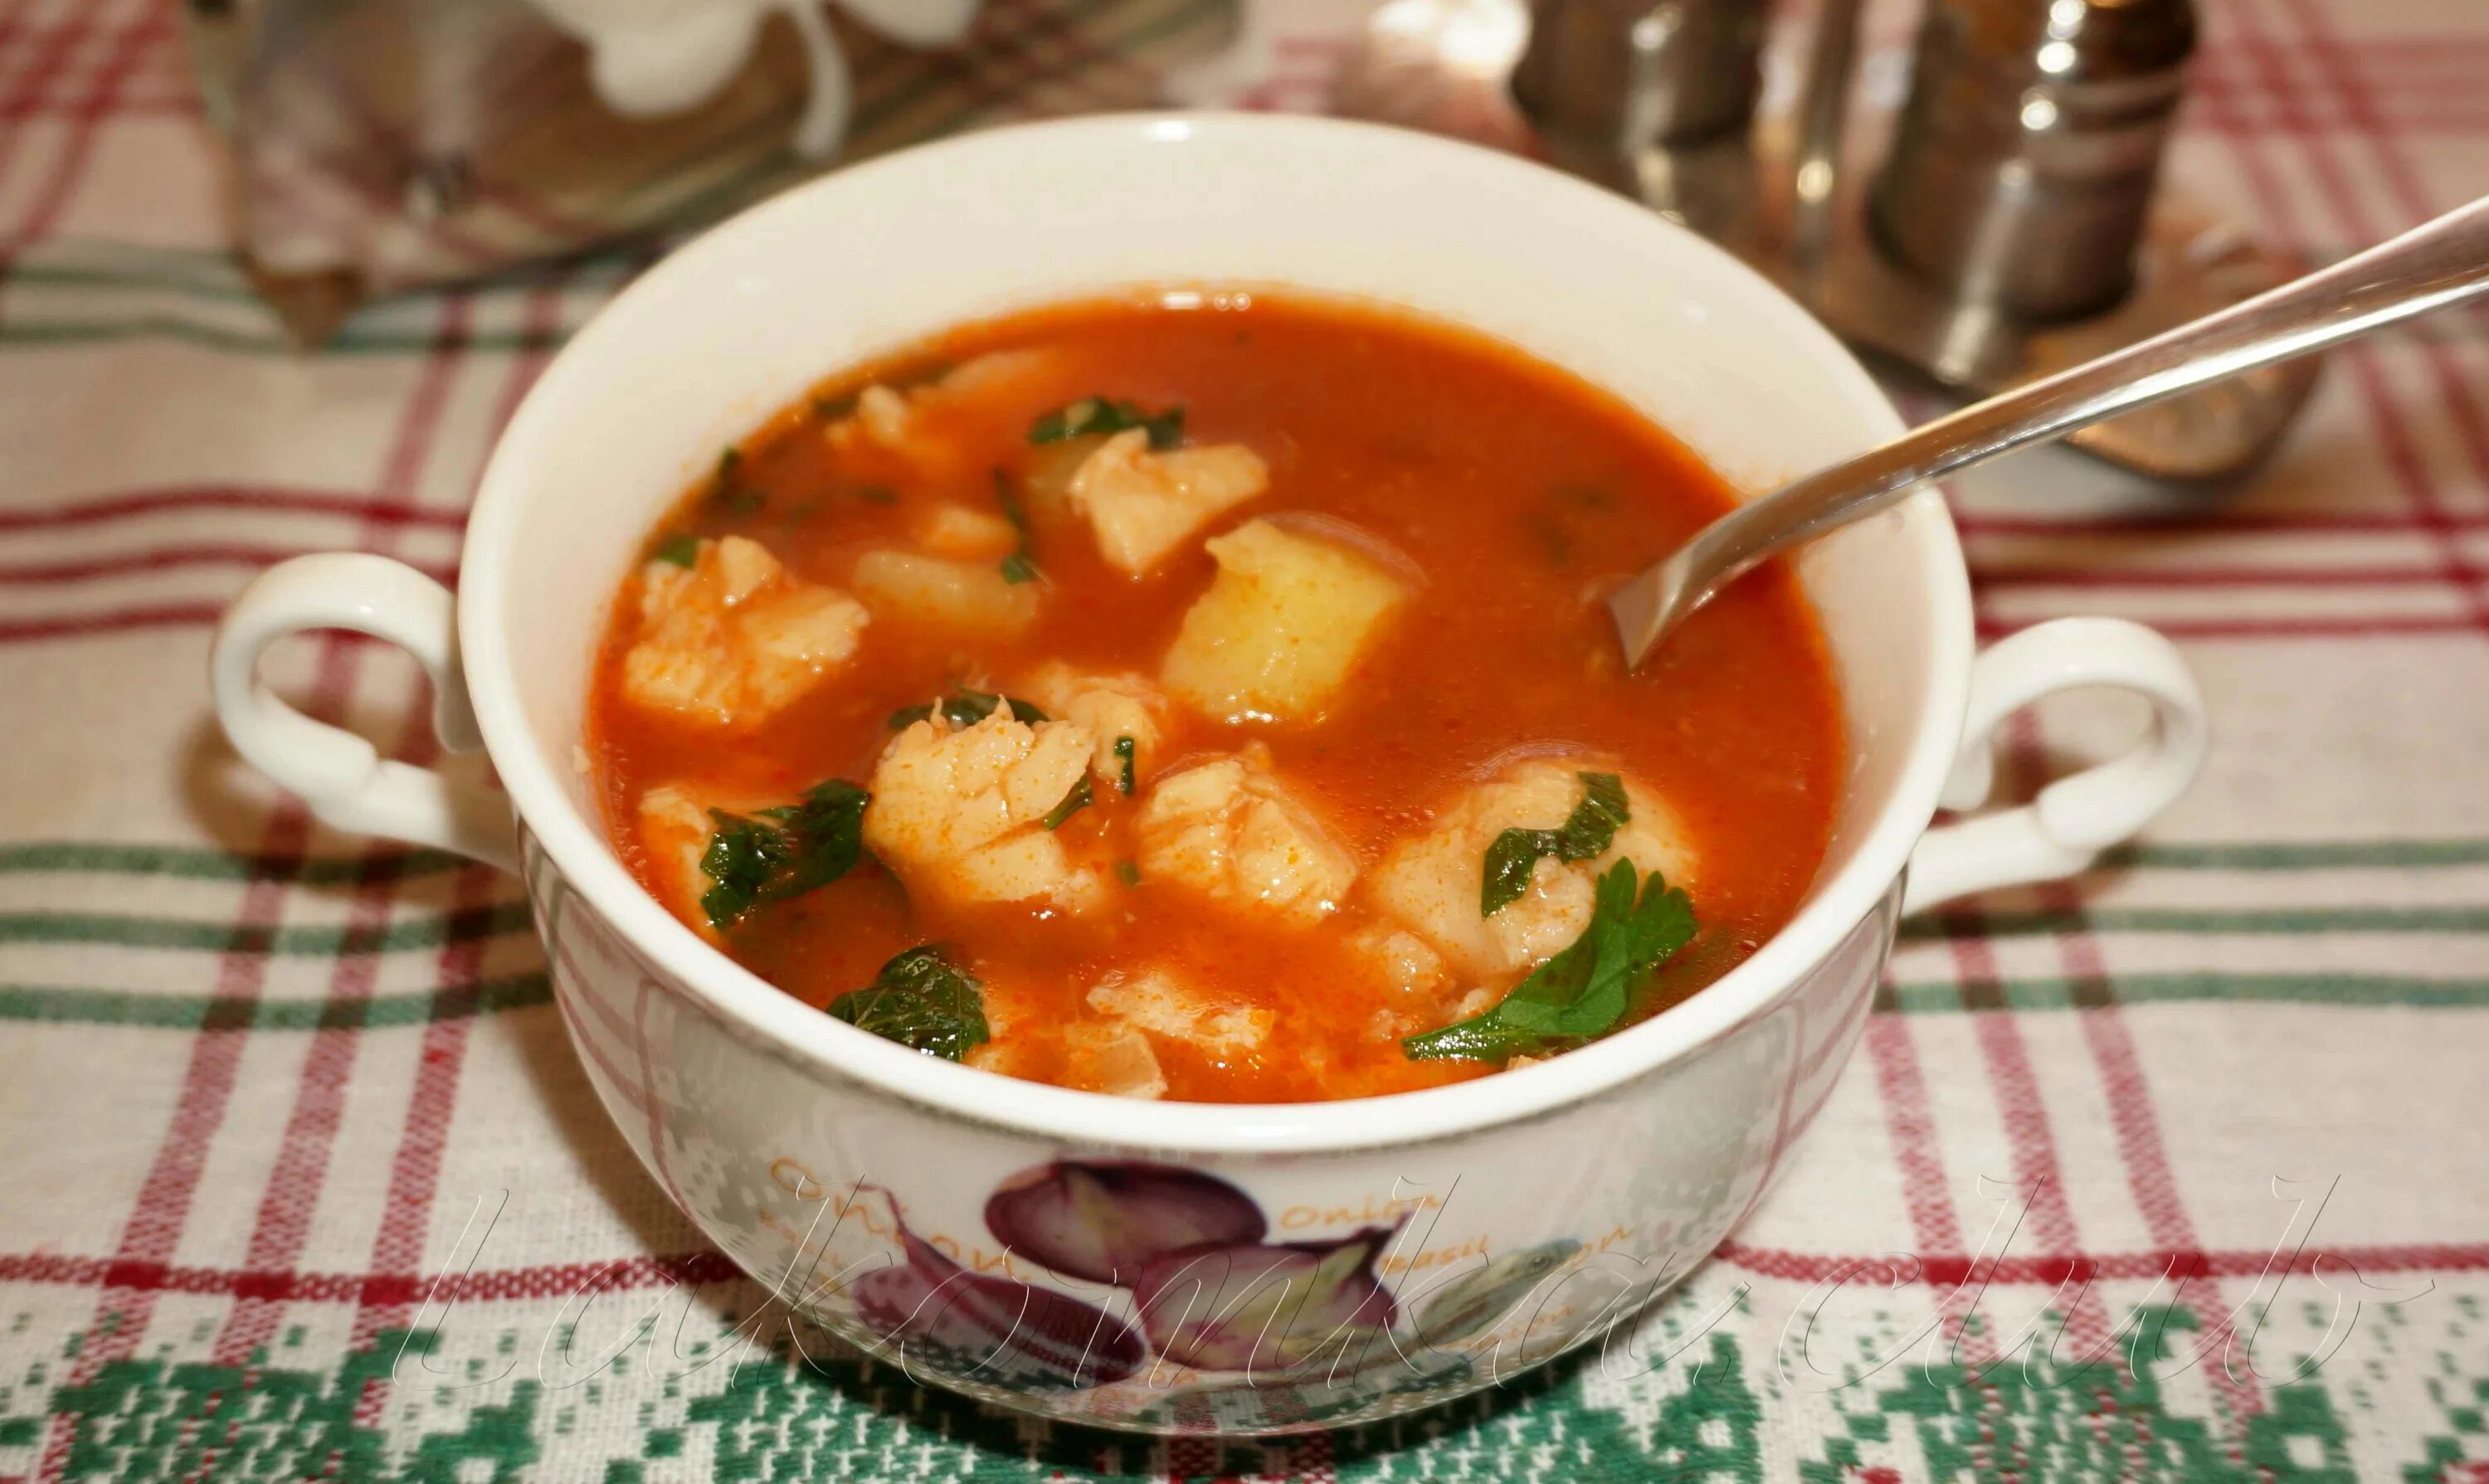 Суп с килькой. Томатный суп с рыбой. Окрошка с килькой в томатном соусе. Рыбный суп из консервов с рыбой в томатном соусе. Суп из консервы рыбной в томате